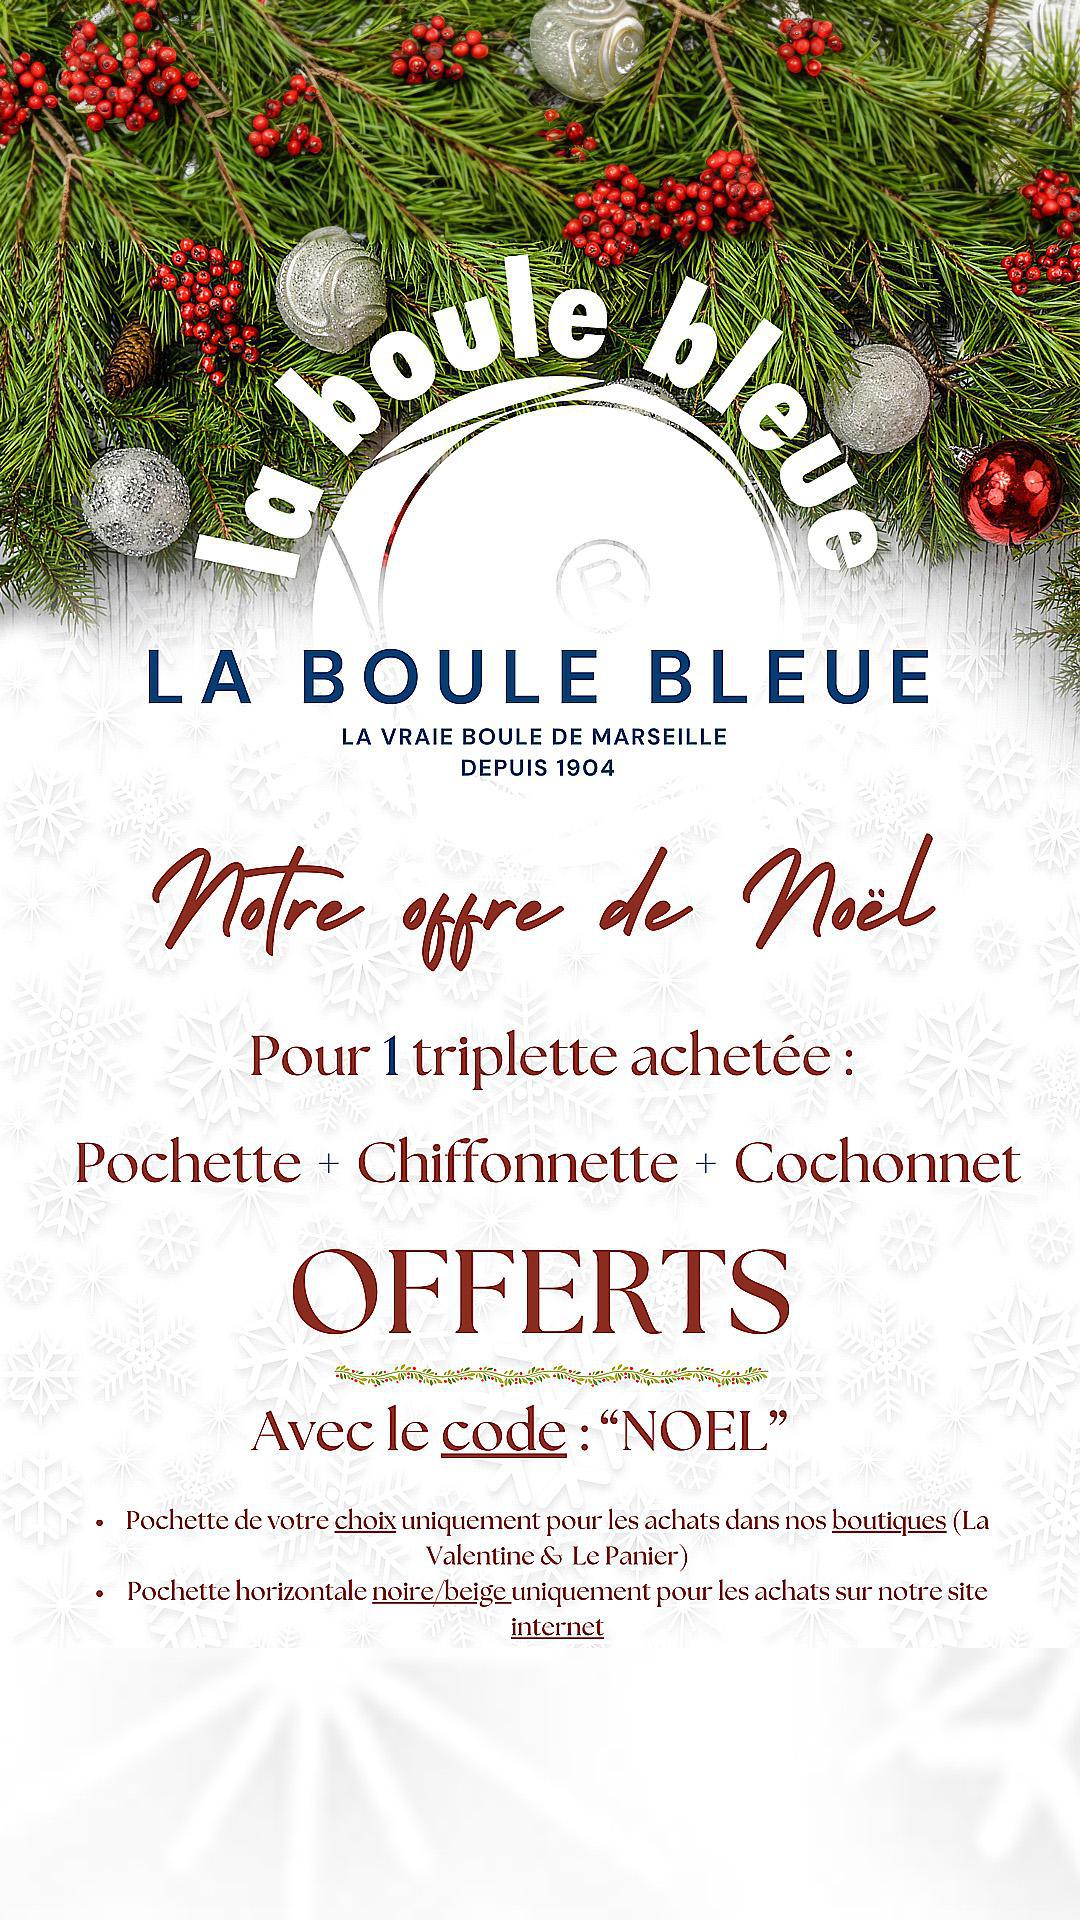 La Boule Bleue sous le Sapin : Triplette + Cadeaux Offerts !